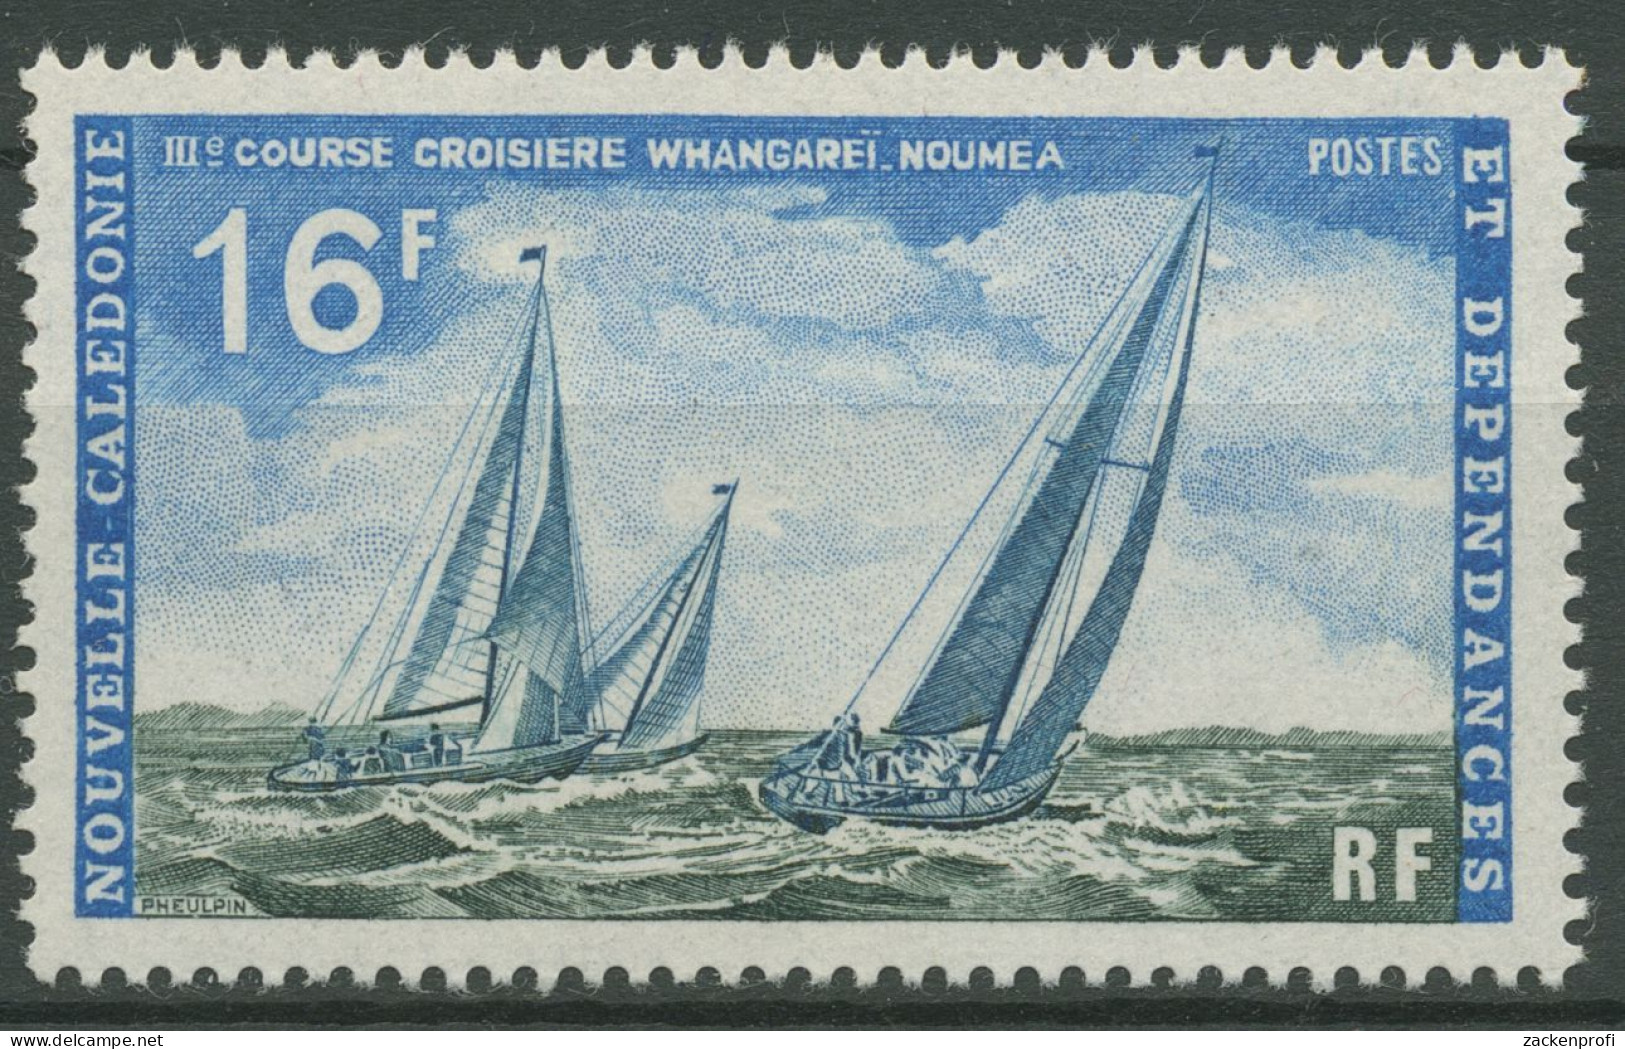 Neukaledonien 1971 Hochseeregatta Whangarei-Nouméa 500 Postfrisch - Nuevos